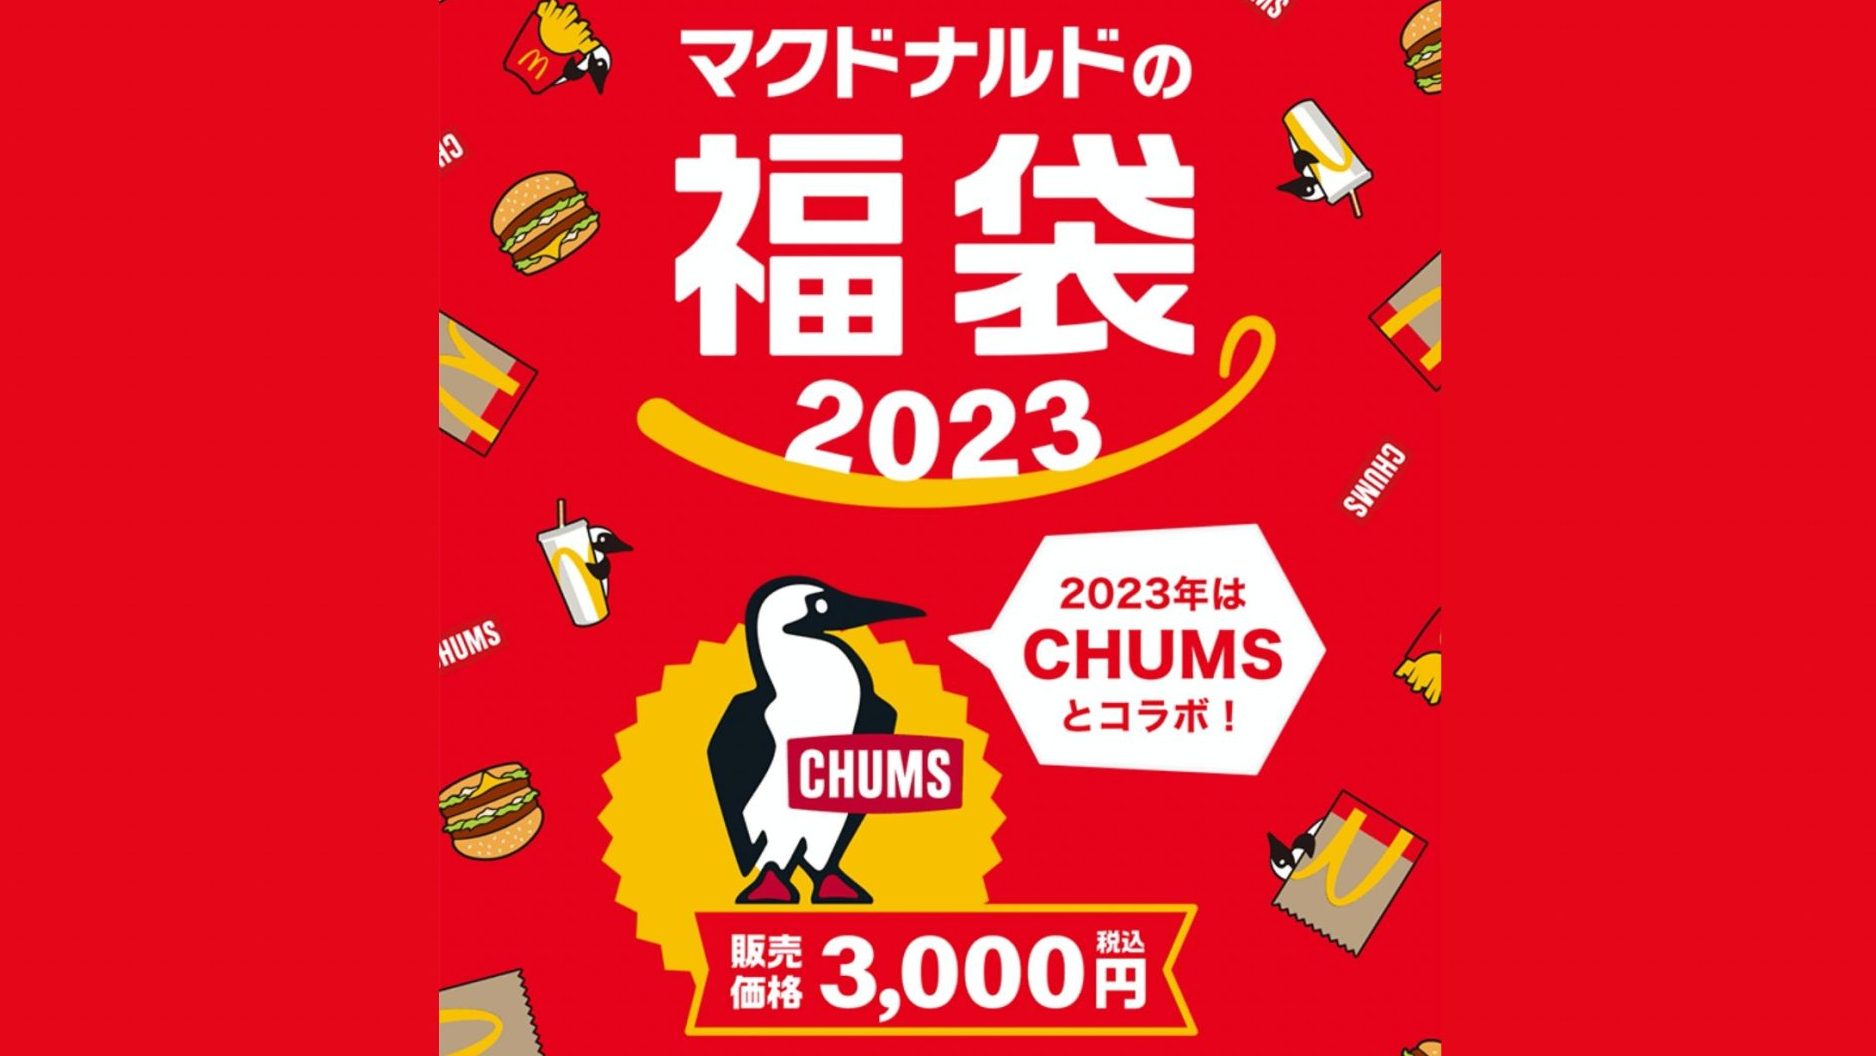 マクドナルド 福袋2023 CHUMS - 2